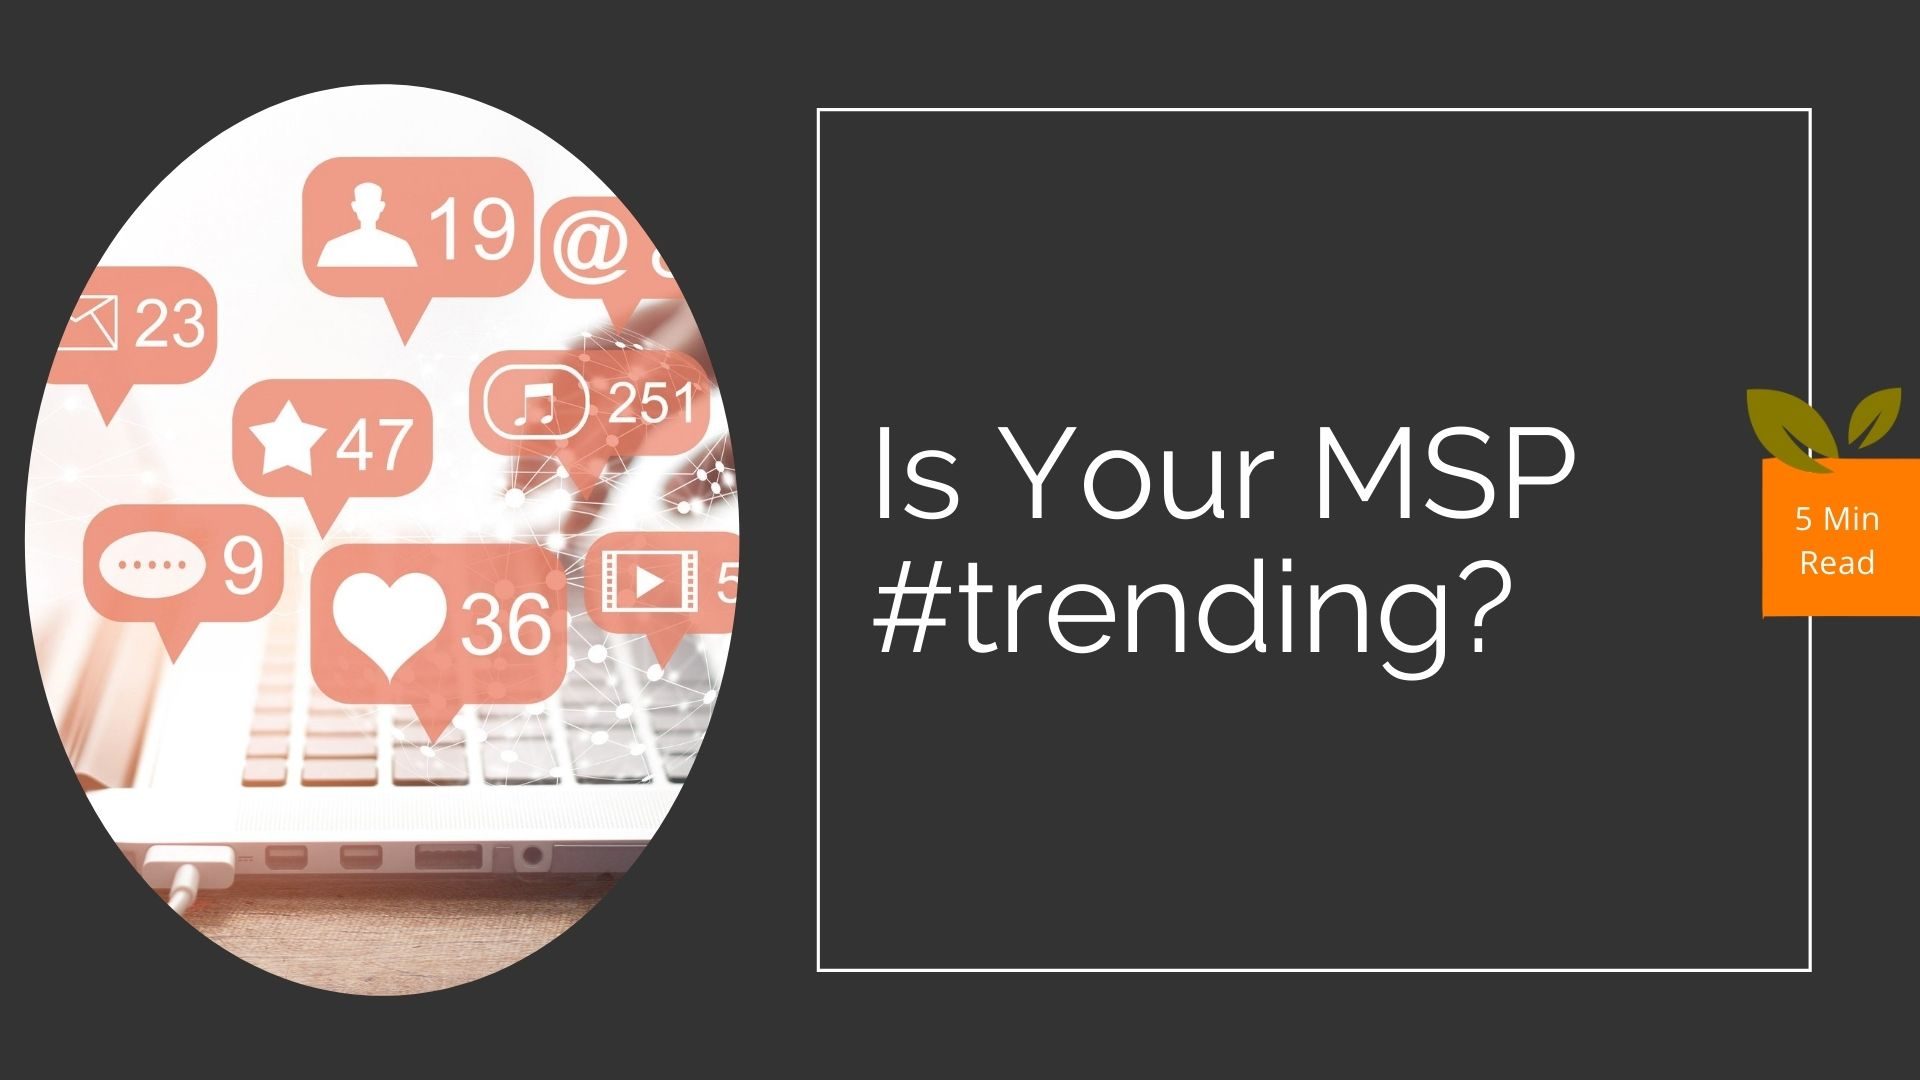 Do's and Don'ts of MSP social media marketing